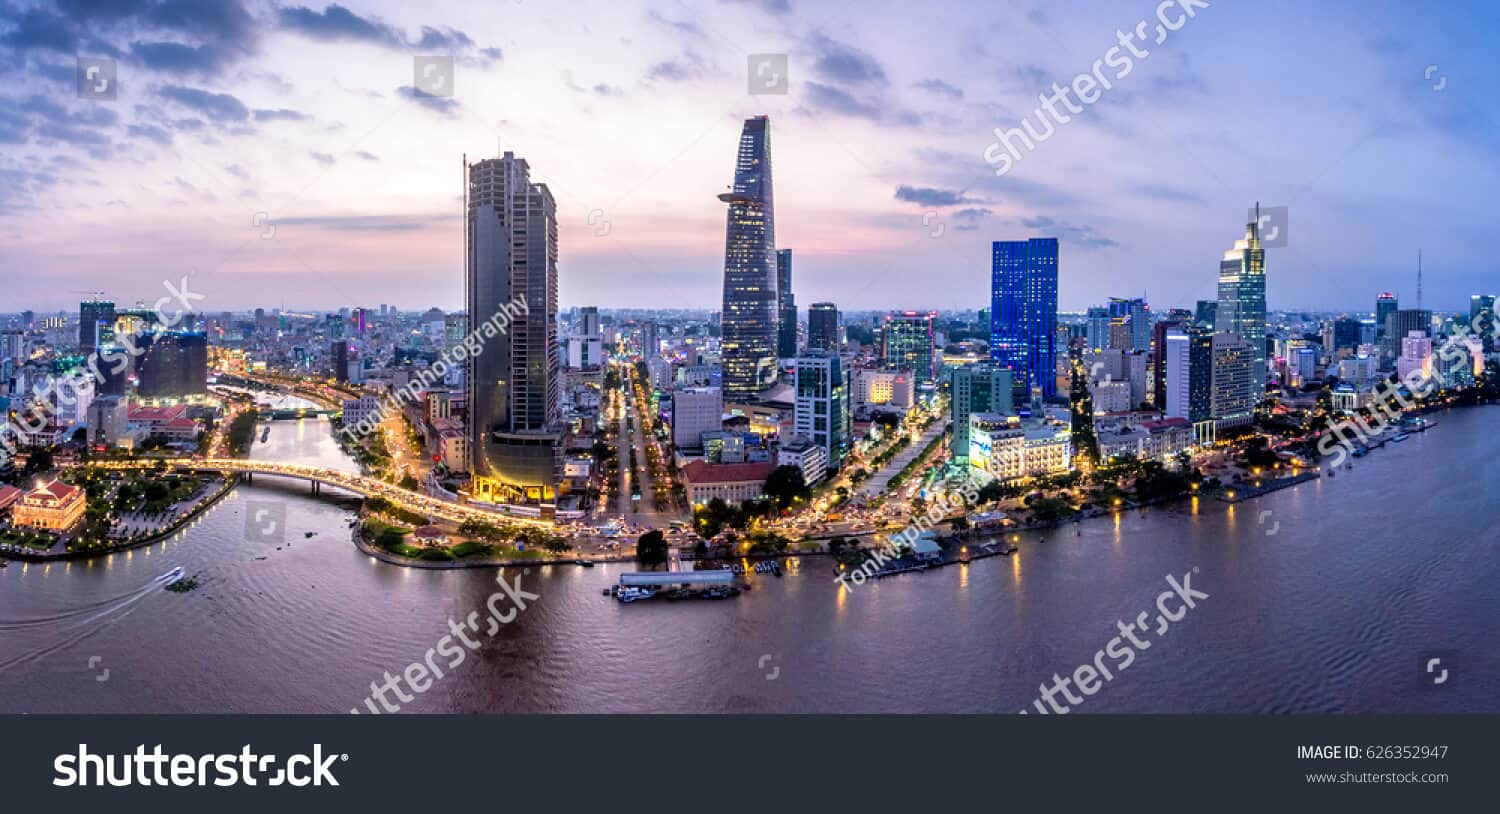 65 ngàn hình ảnh thành phố Hồ Chí Minh chất lượng cao